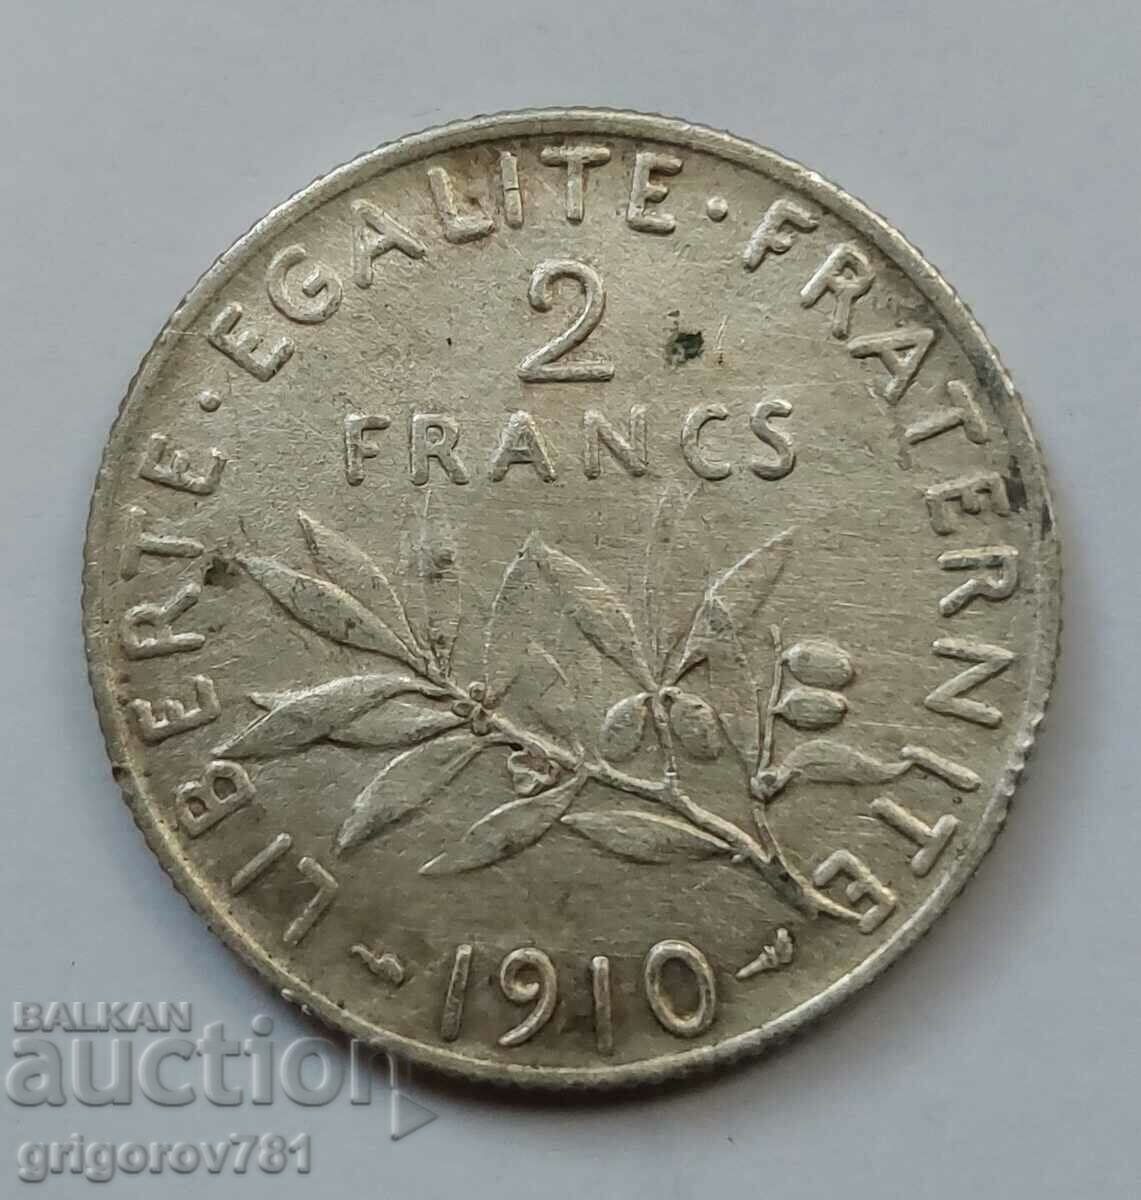 2 Franci Argint Franta 1910 - Moneda de argint #34